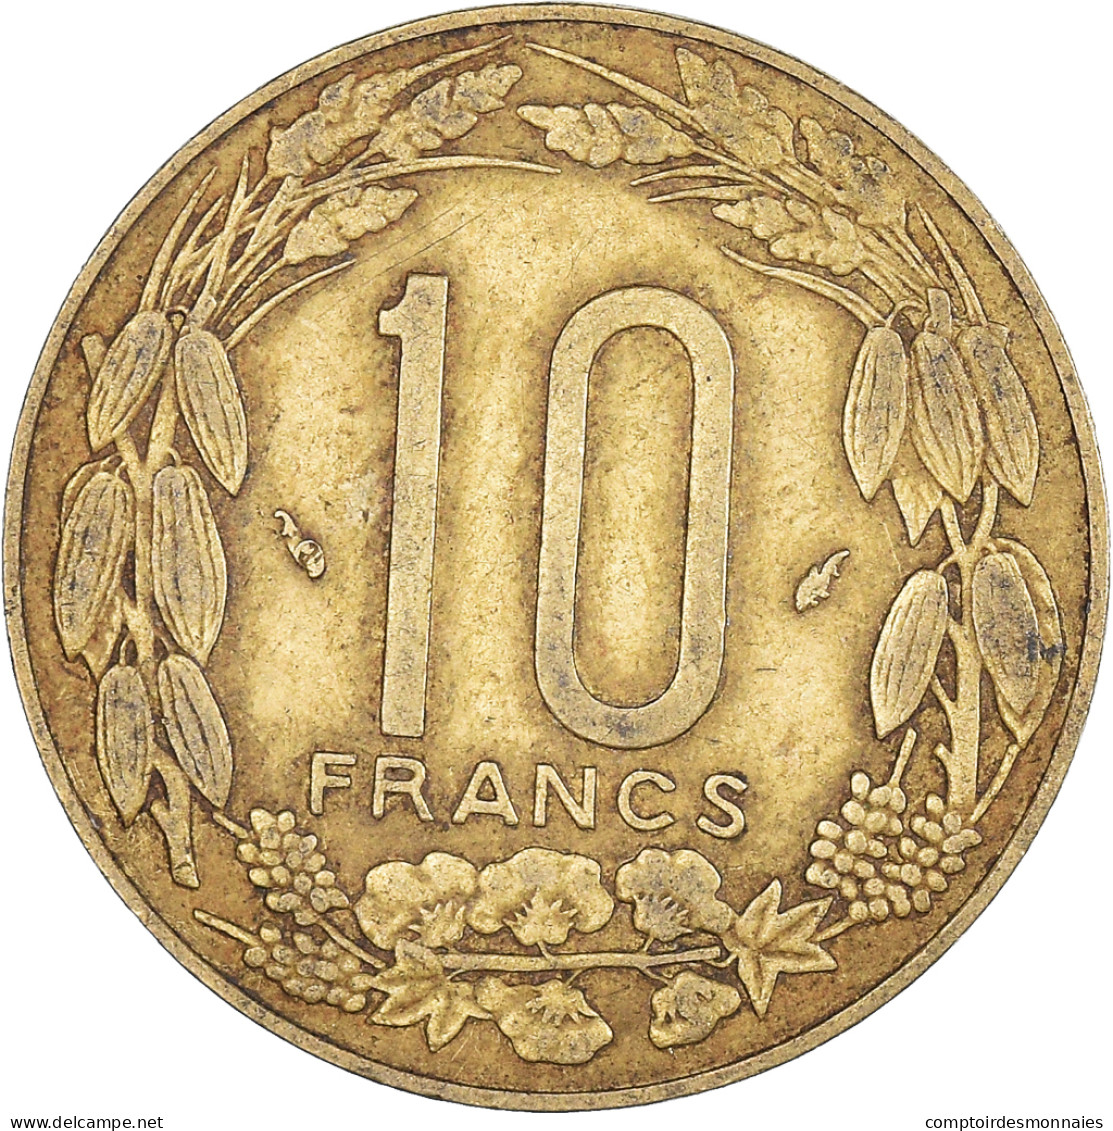 Monnaie, États De L'Afrique Centrale, 10 Francs, 1983 - Central African Republic